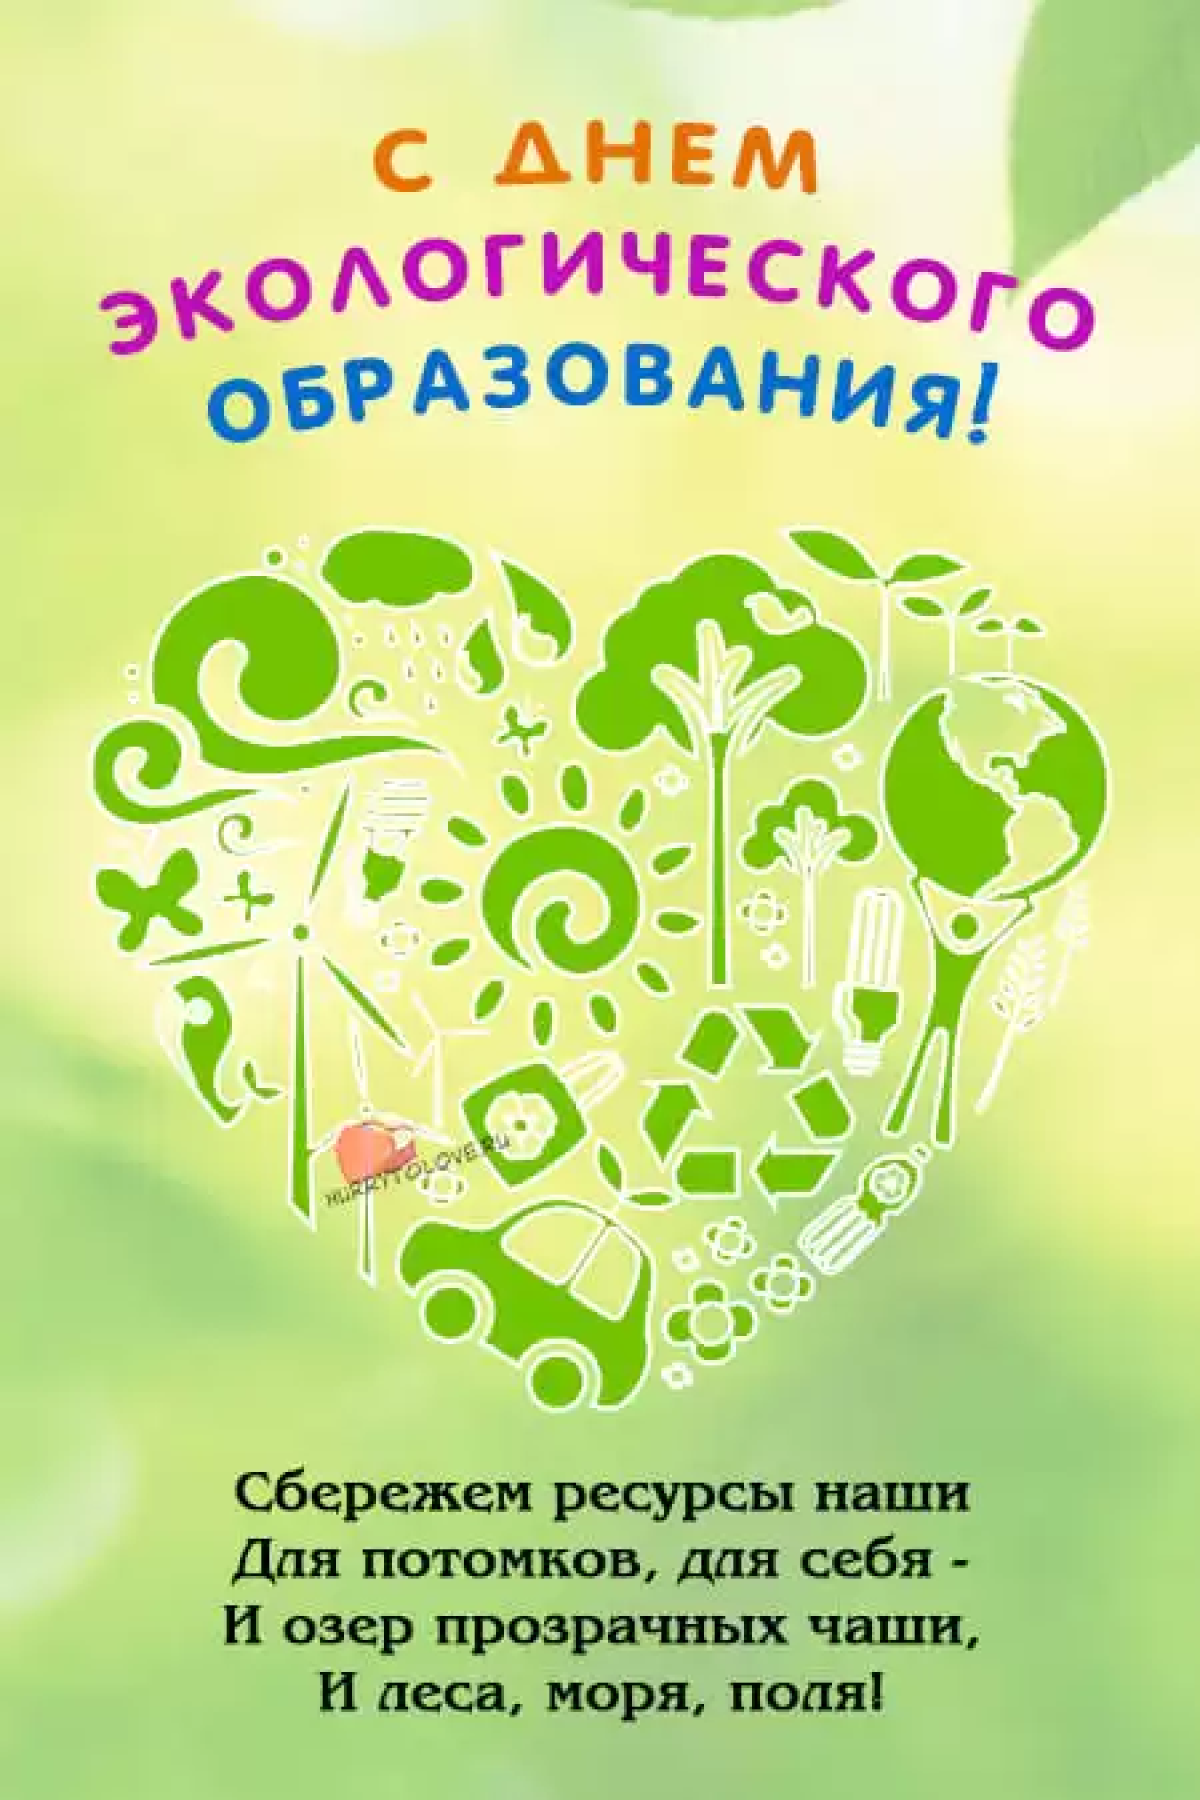 День экологического образования отмечается 12 мая